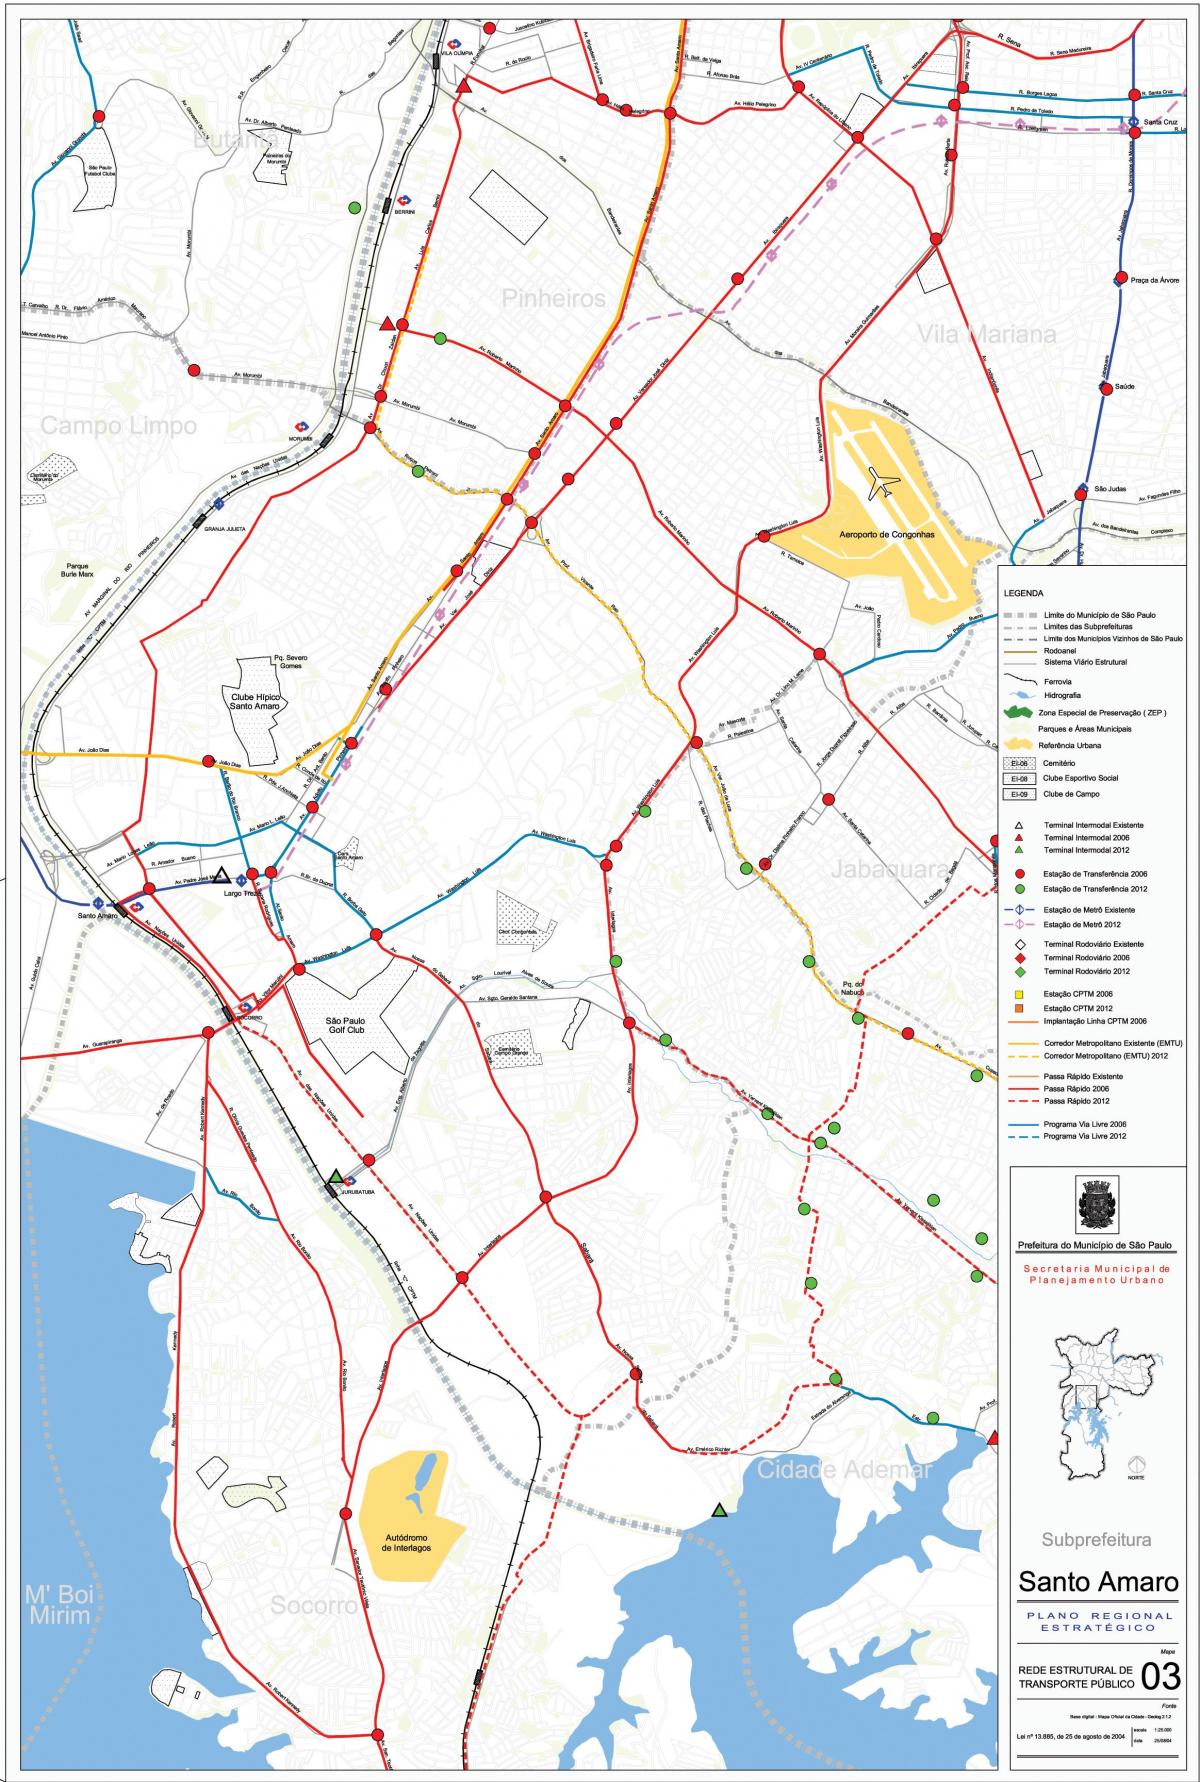 Mapa Santo Amaro São Paulo - Veřejné dopravě